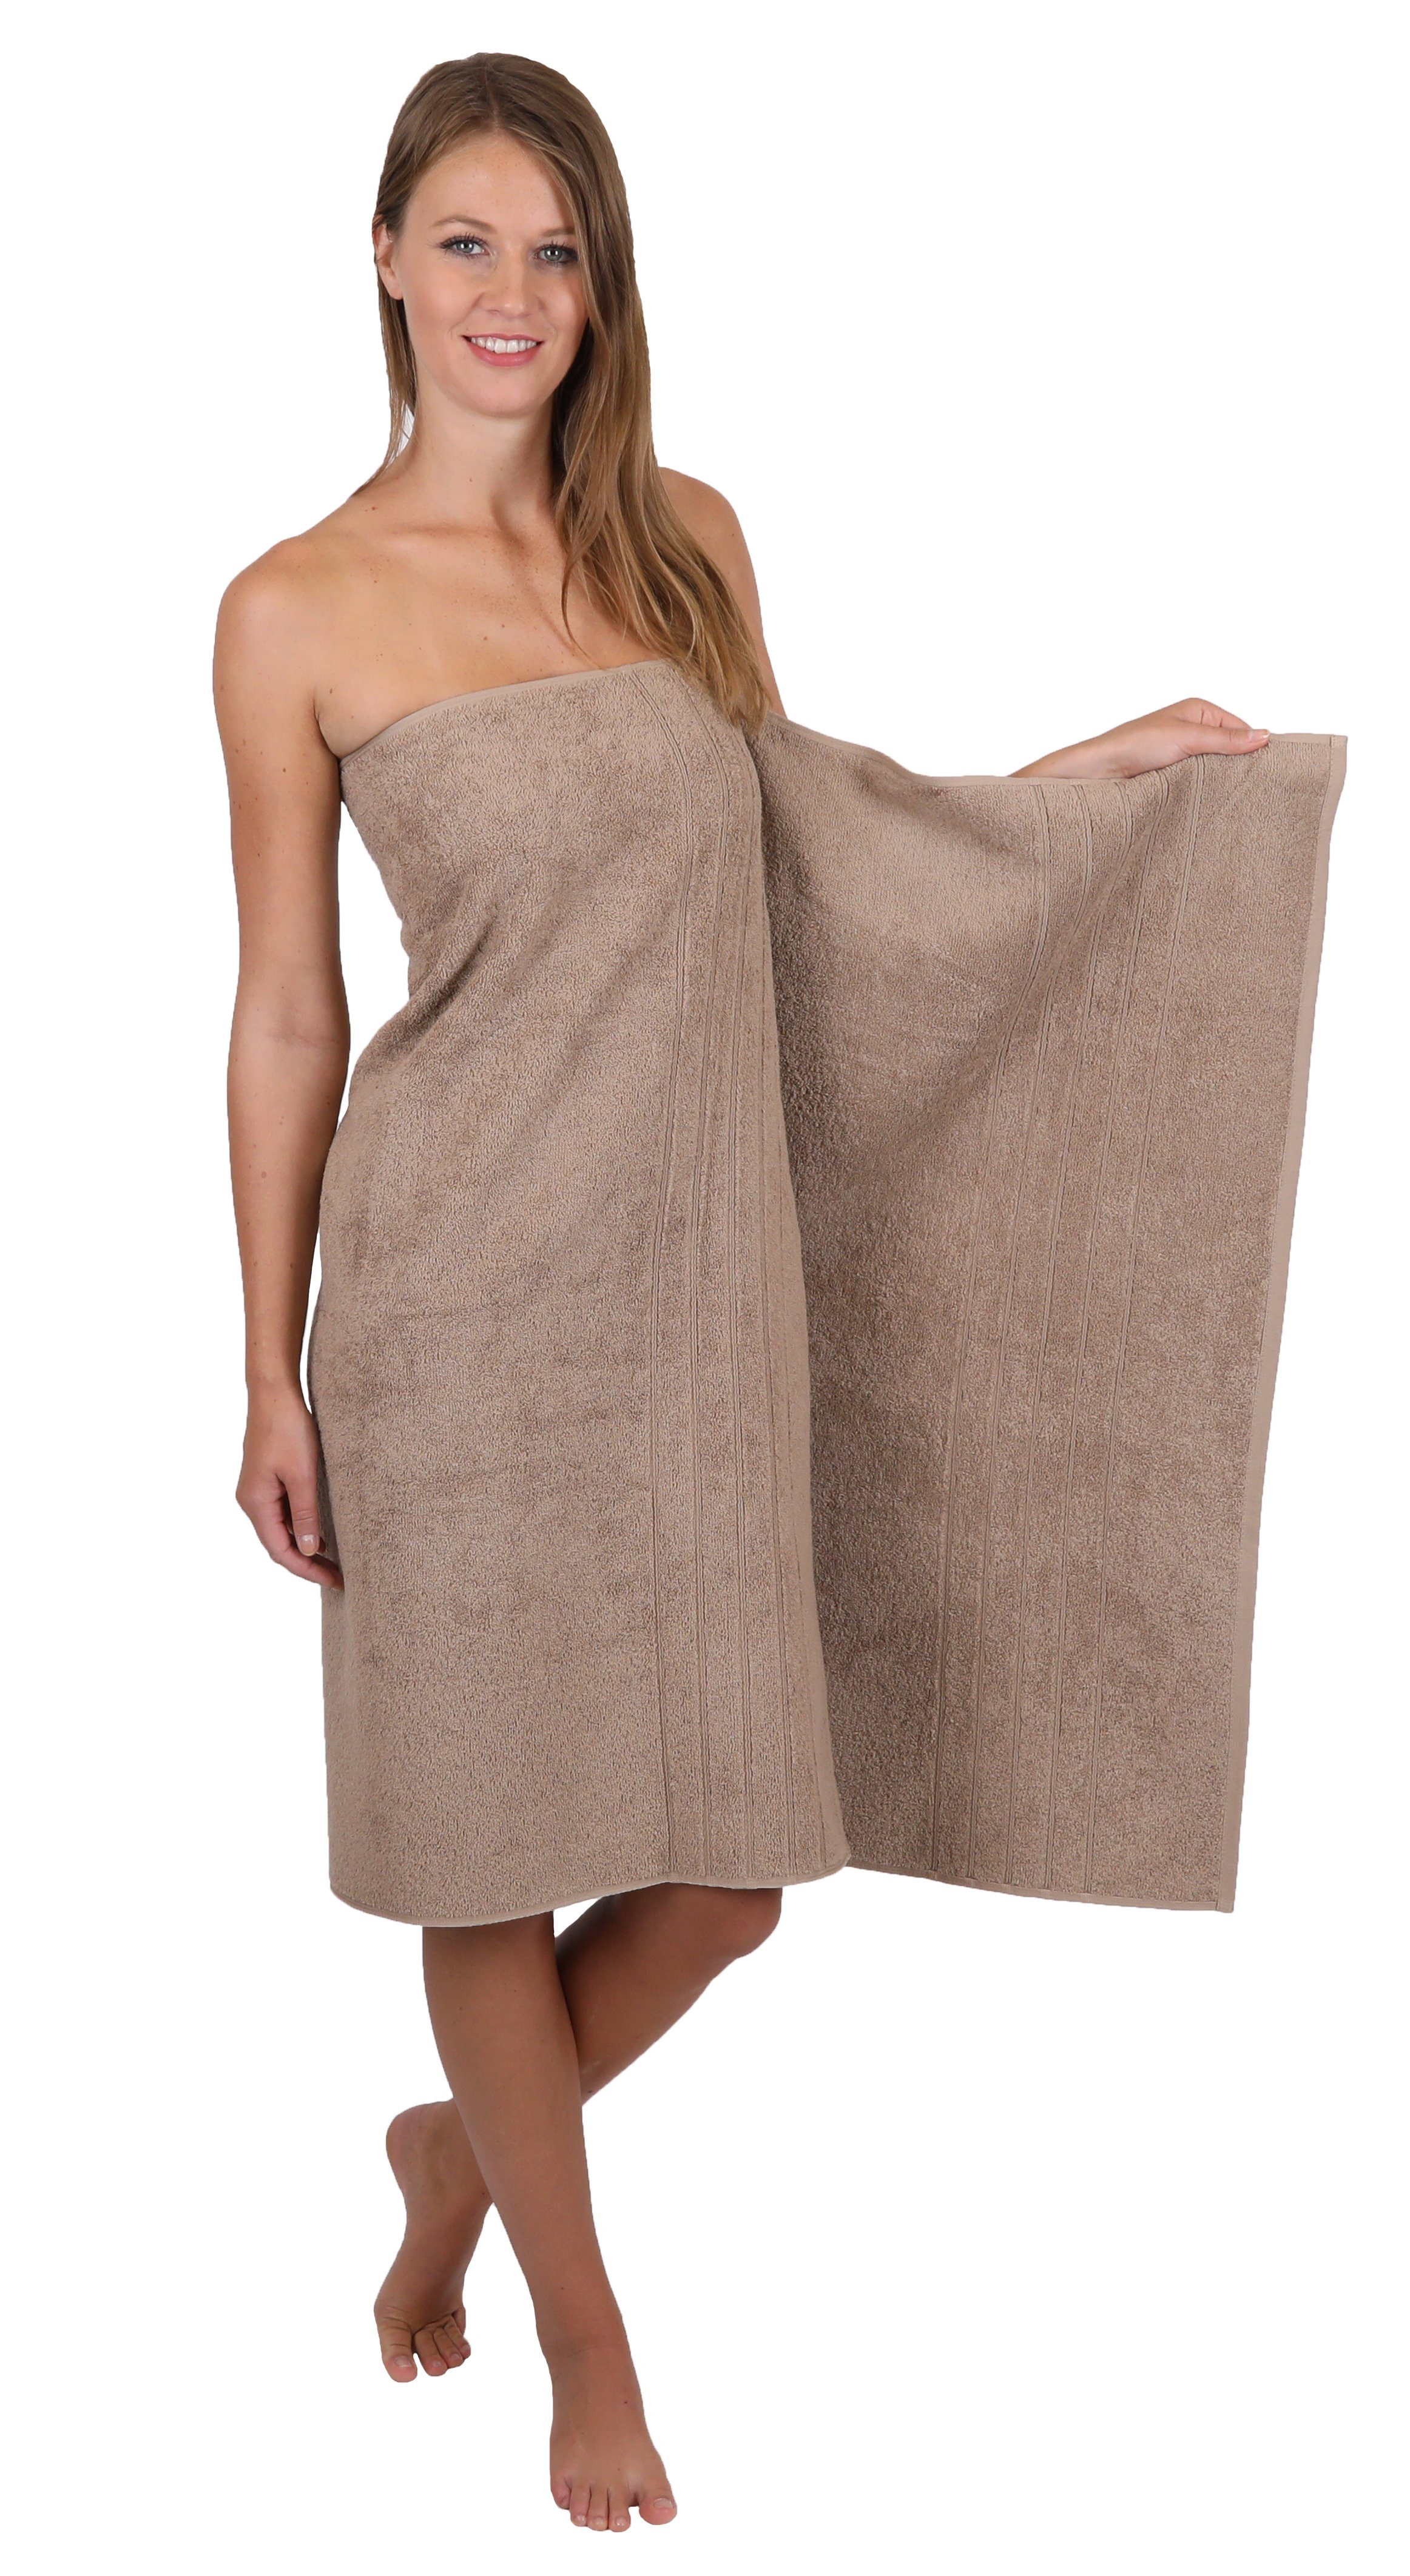 Heimtextilien Handtuch-Sets Betz Handtuch Set 8-TLG. Handtuch-Set Deluxe 100% Baumwolle 2 Badetücher 2 Duschtücher 2 Handtücher 